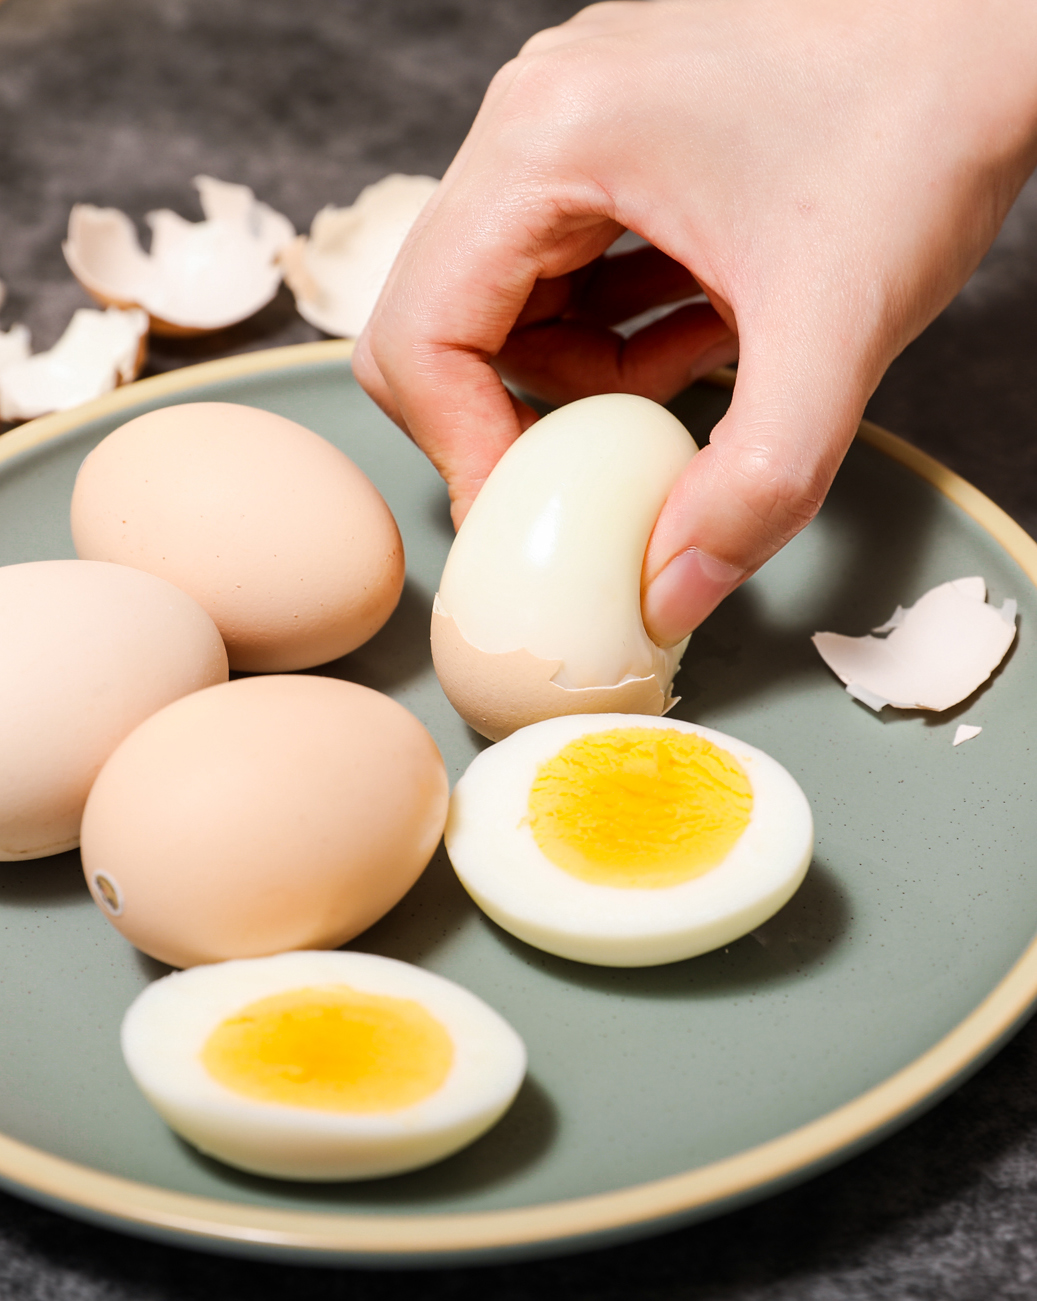 布局高端鸡蛋市场 亲子之选鸡蛋产品全新上市